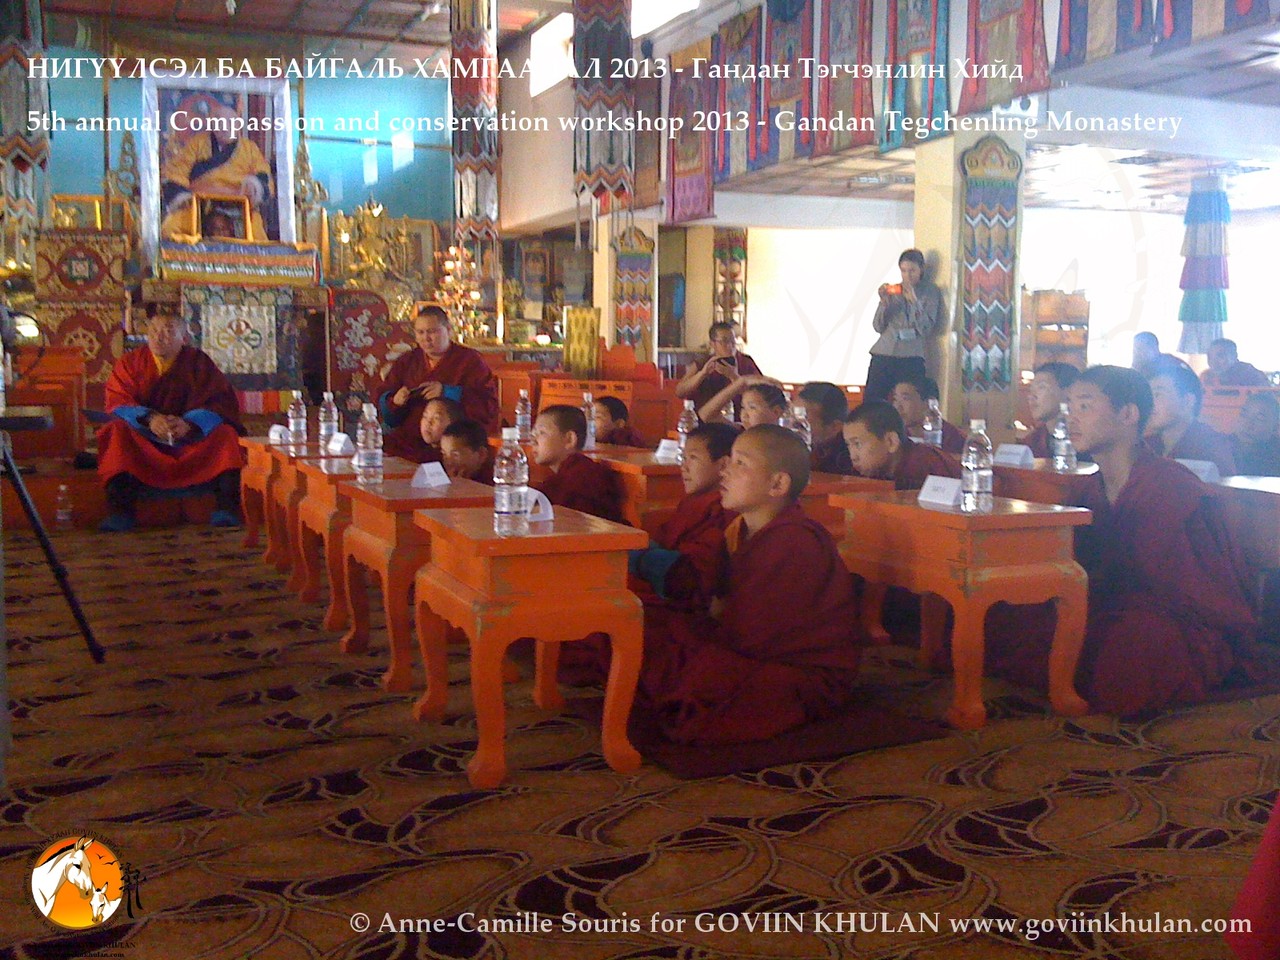 2d jour de la conférence "Compassion et Conservation" à Gandan le 17.05.2013 devant les jeunes moines bouddhistes et leur enseignants